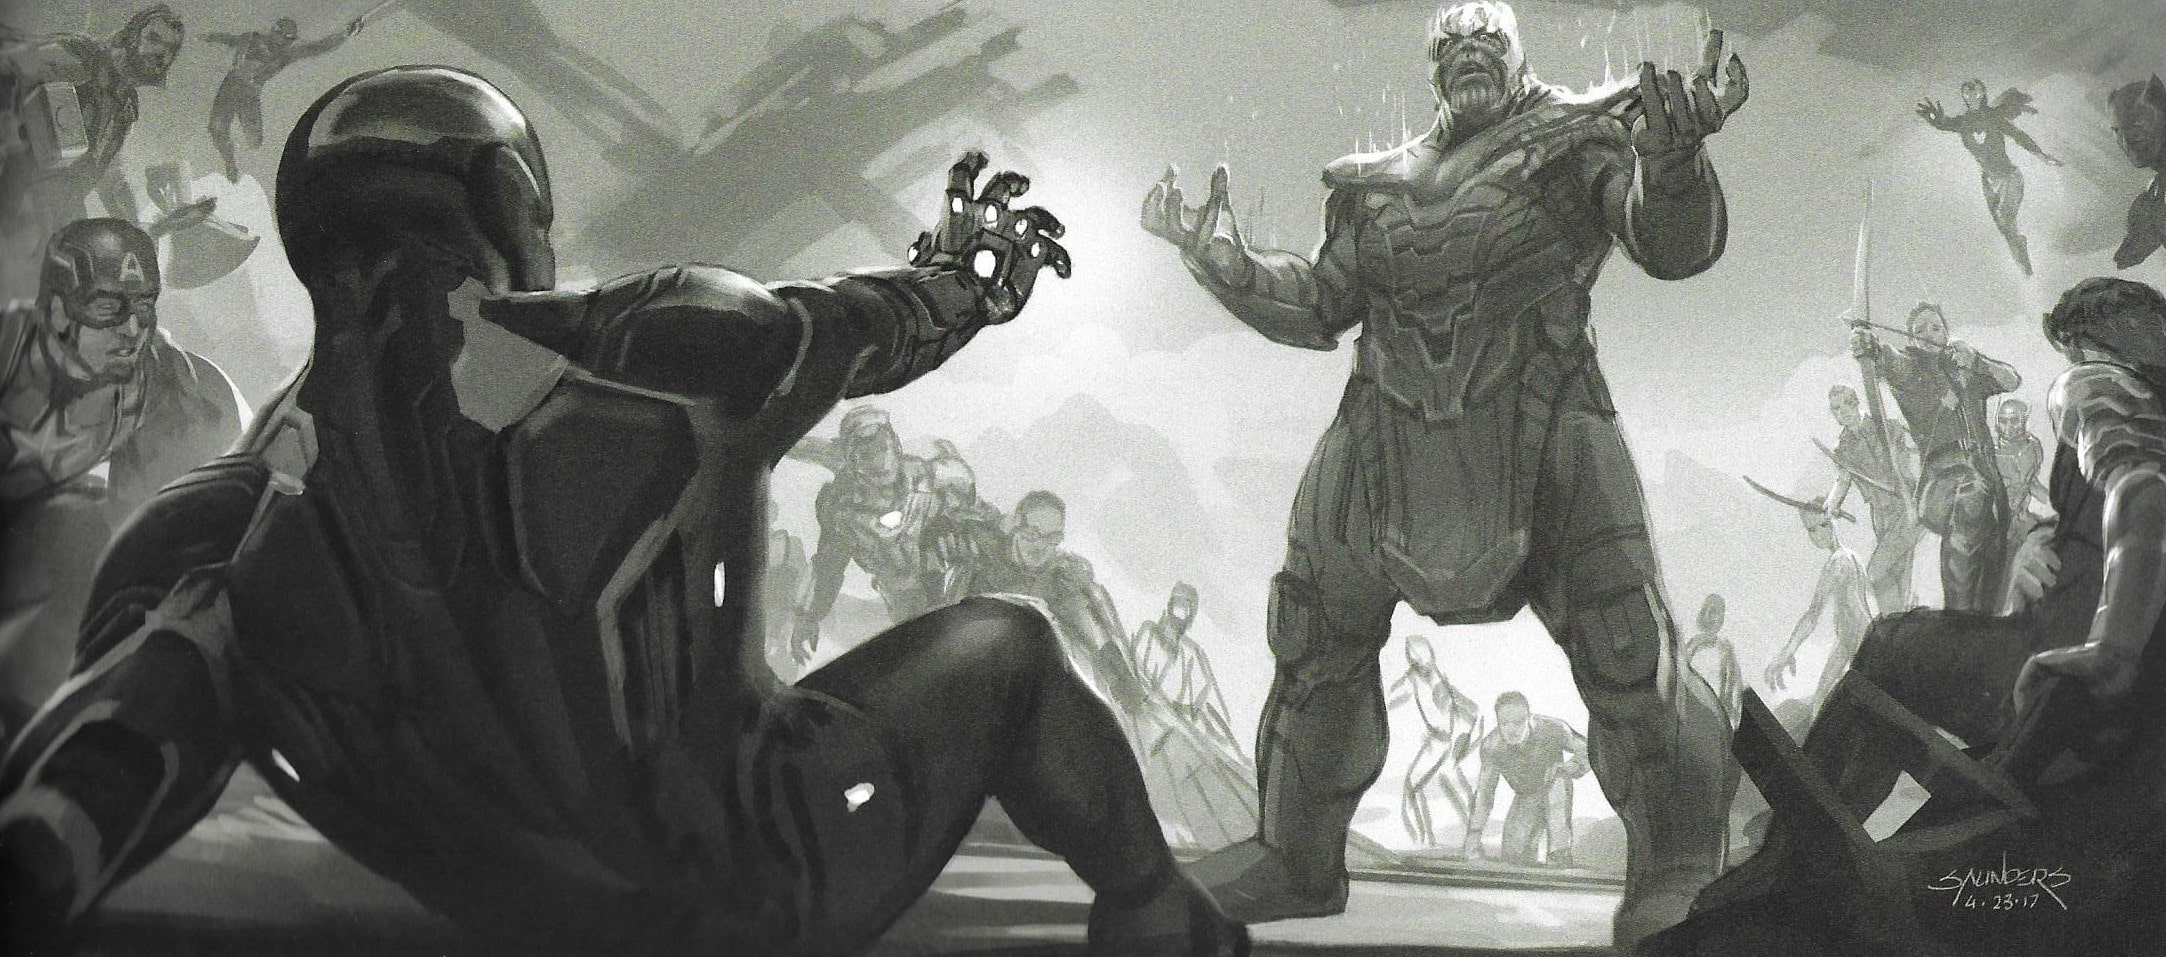 Avengers: Endgame konceptna umjetnost prikazuje Kapetana Ameriku kako gleda na Thanosa i njegovu vojsku